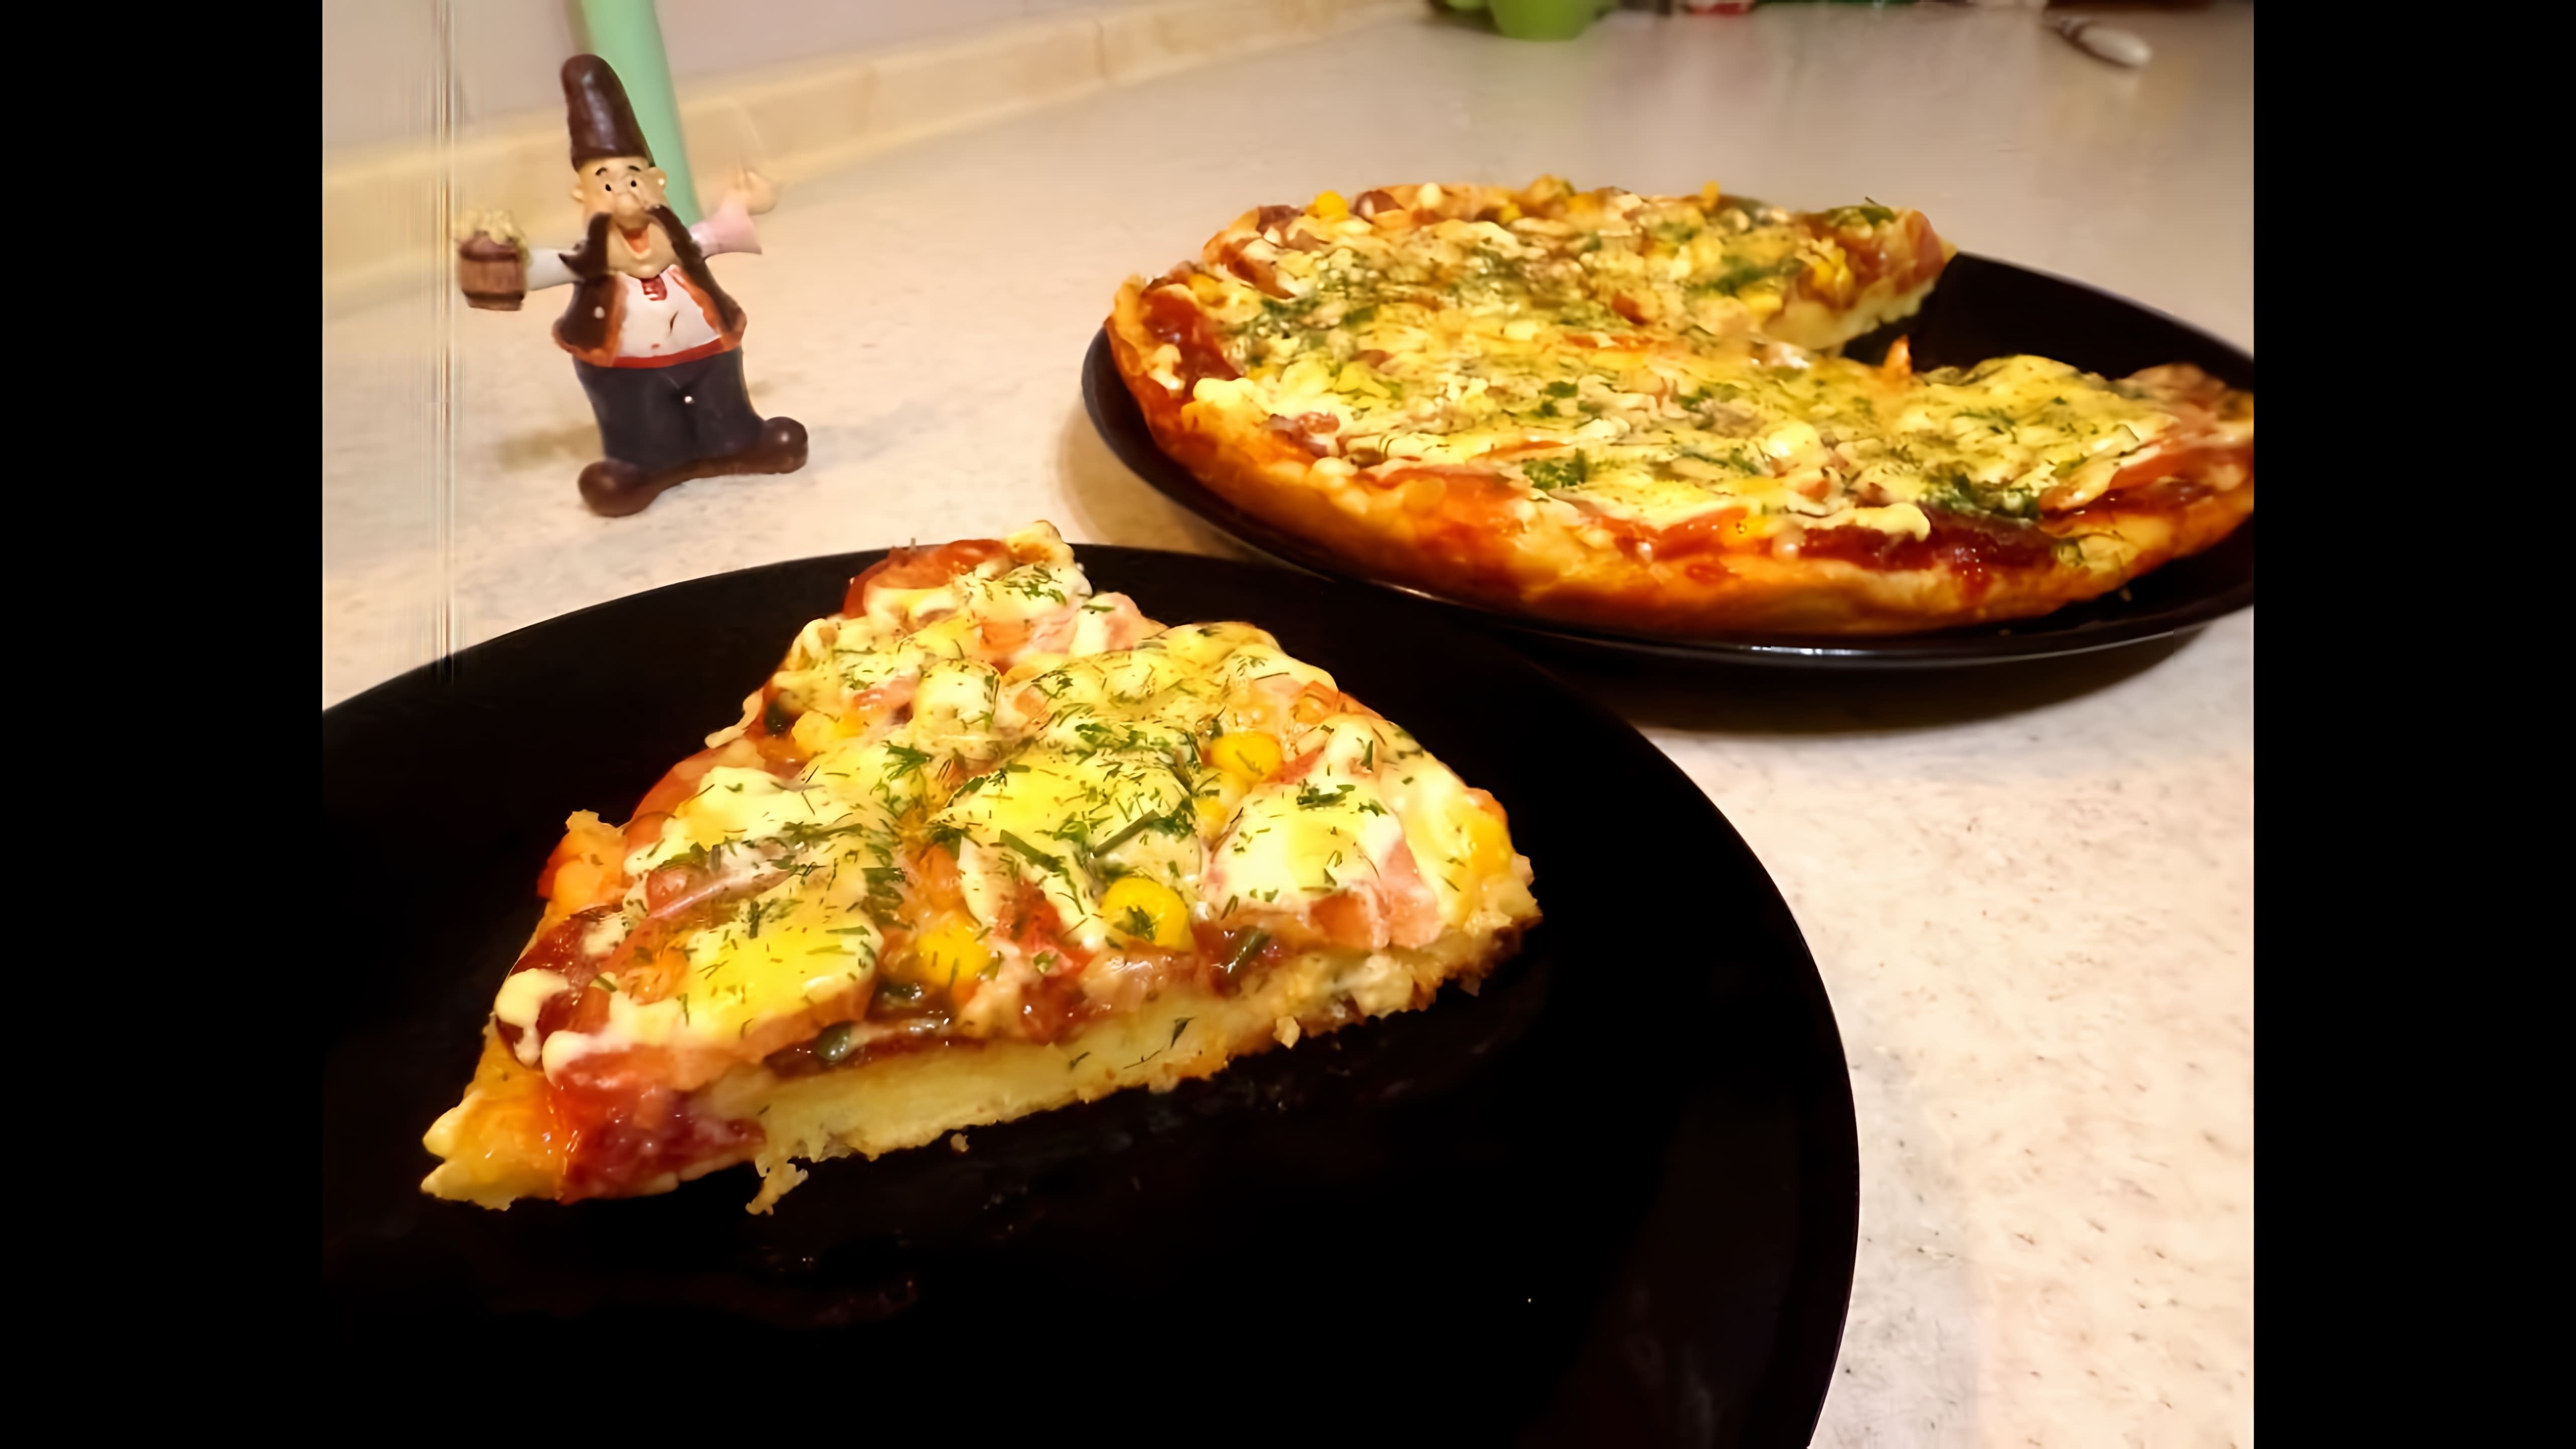 В этом видео демонстрируется процесс приготовления пиццы на скорую руку